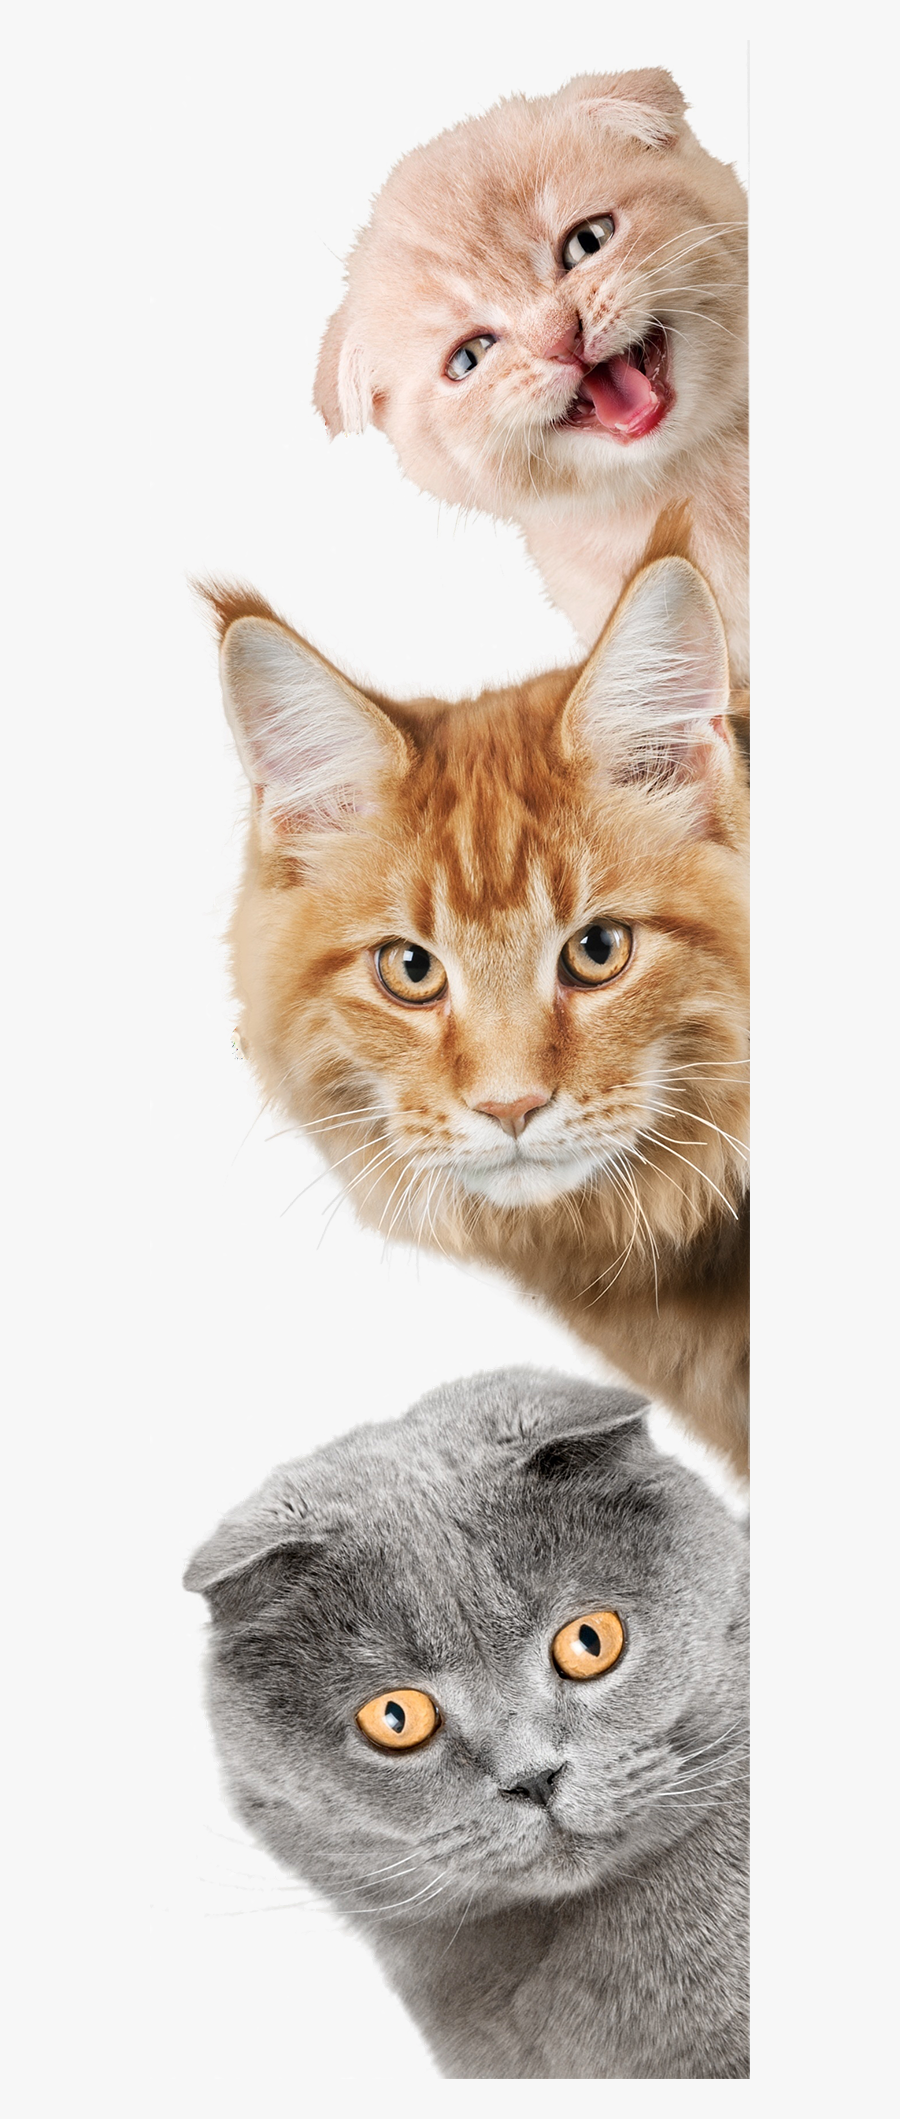 Cat Laying Down Png - Papel De Parede Animais, Transparent Clipart